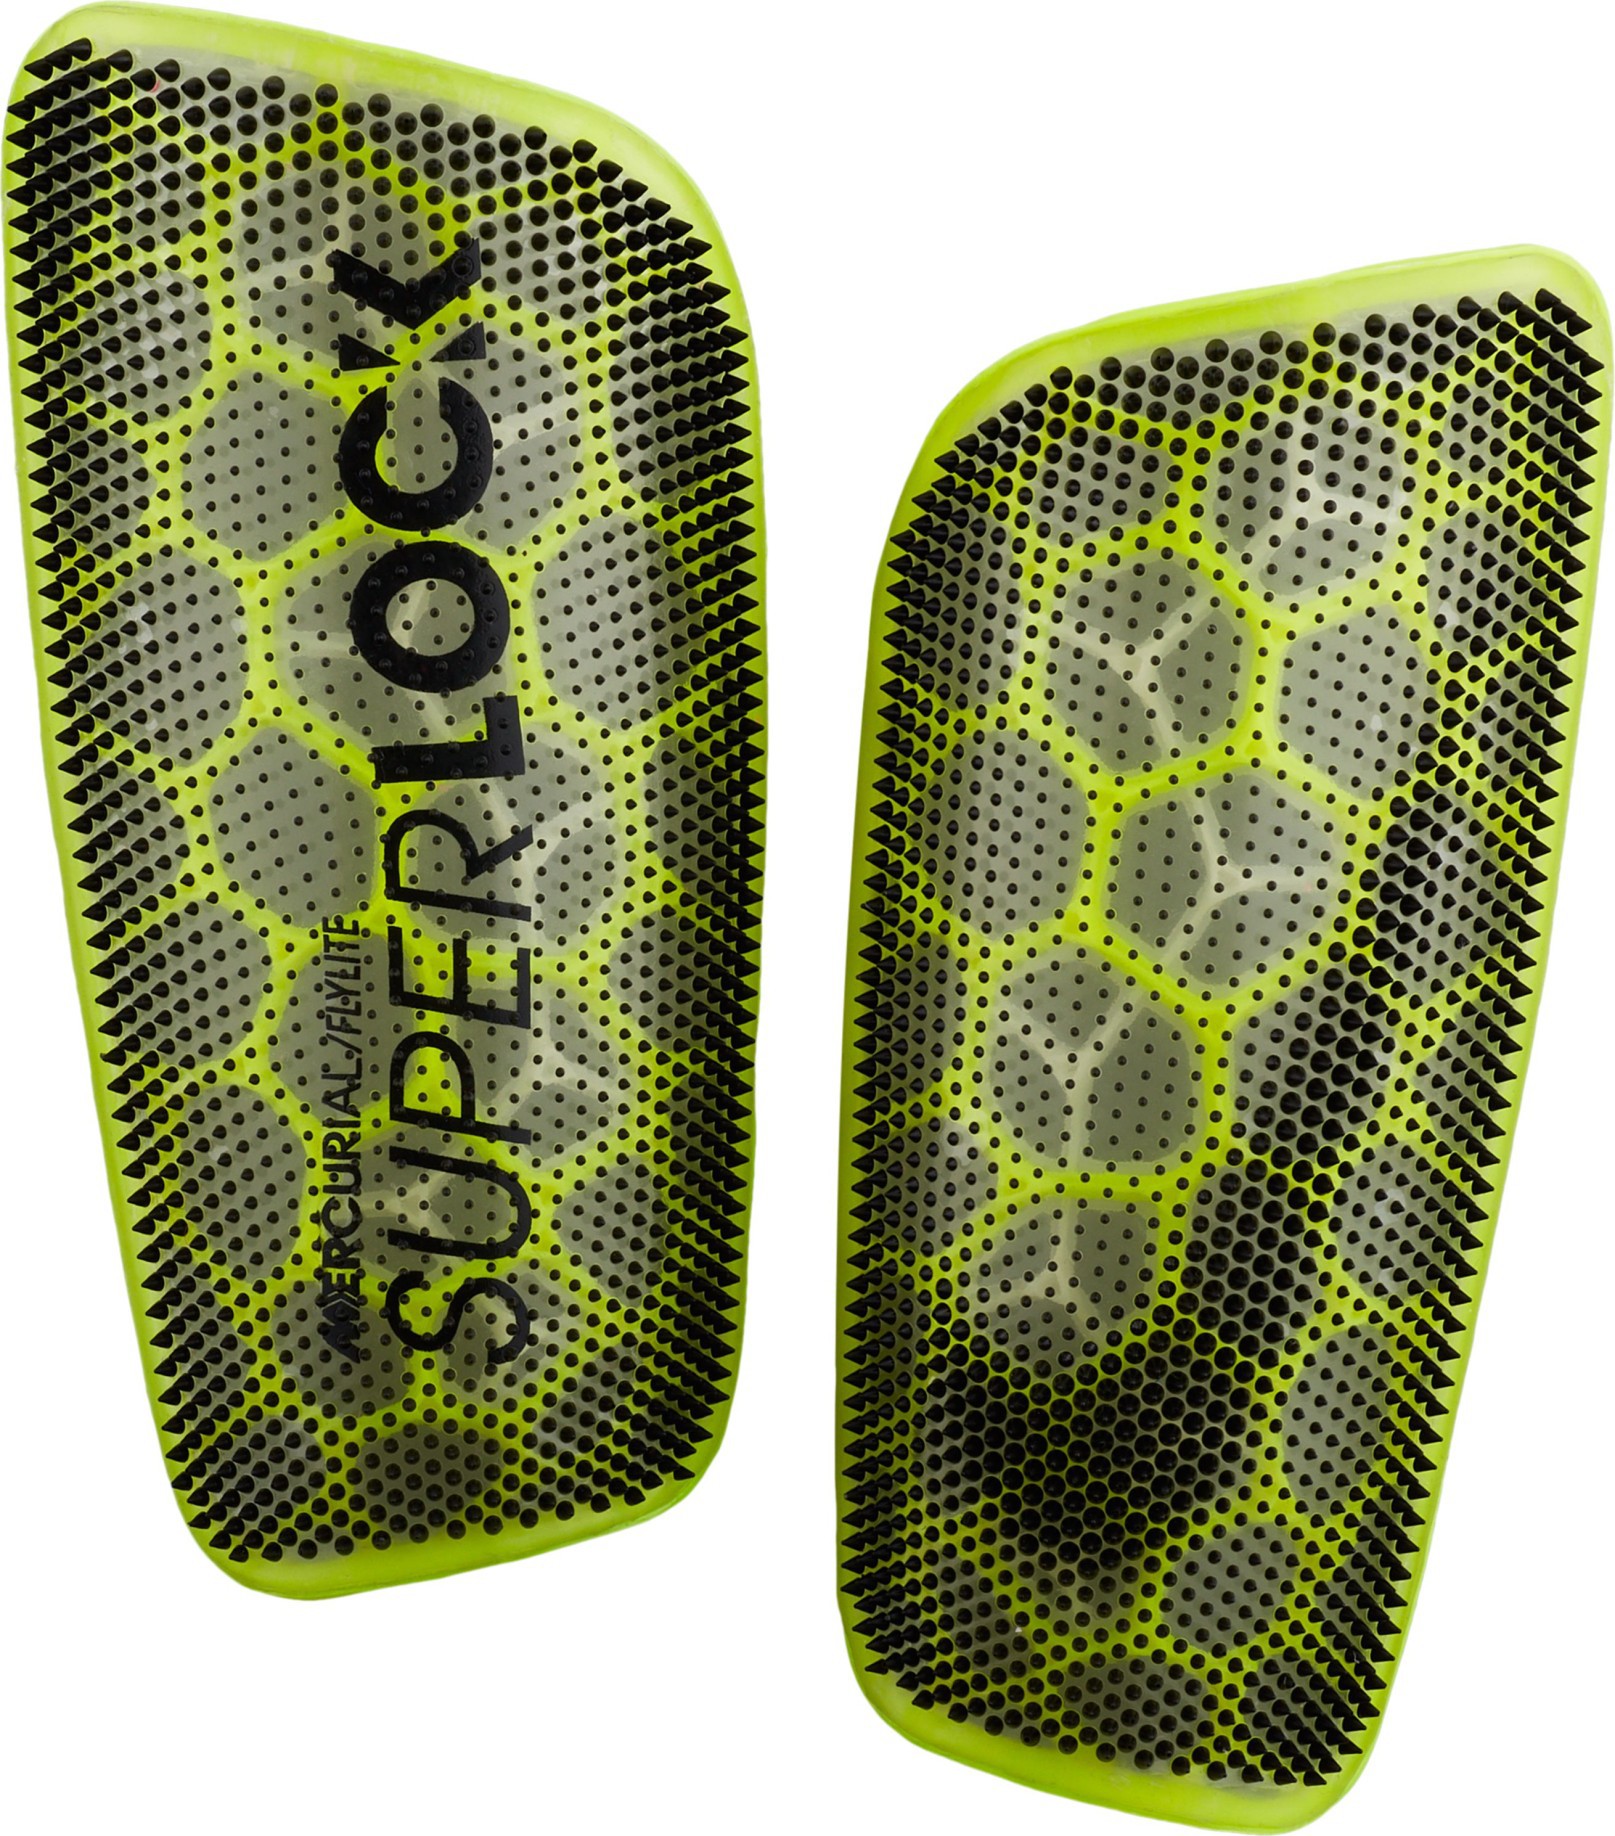 Formación pobre vertical Espinilleras Nike Mercurial FlyLite SuperLock colore amarillo negro - Nike  - SportIT.com